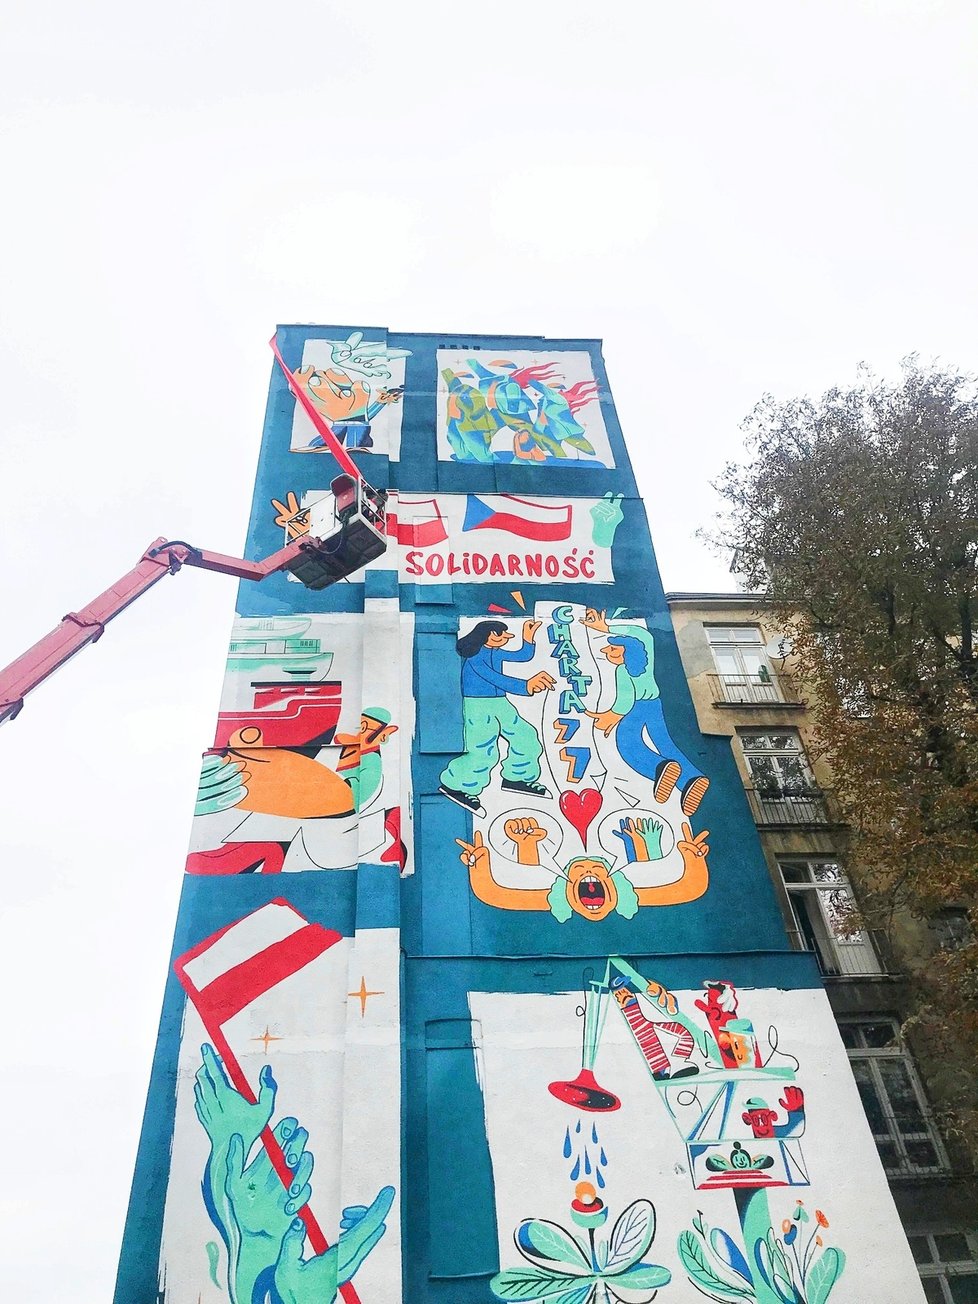 Odhalení nástěnného muralu ve Varšavě při příležitosti 40. výročí vzniku polského hnutí Solidarita. Umělecké dílo vzniklo jako společný projekt osmi českých a polských umělců. Výsledkem jsou dva nástěnné muraly, které se odhalily ve stejnou chvíli v Praze a ve Varšavě.